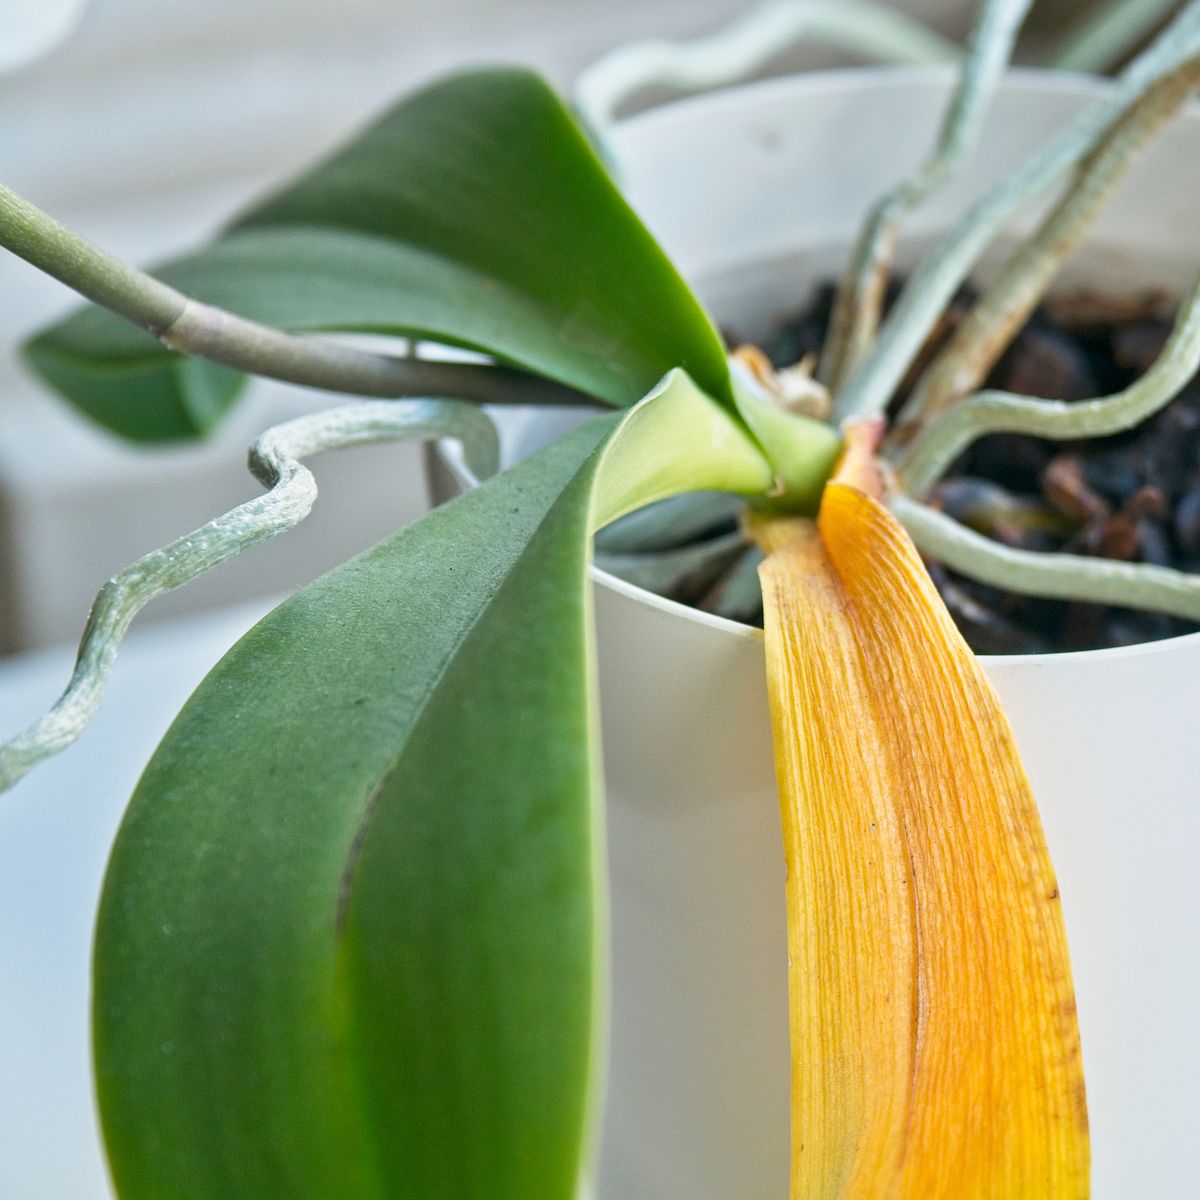 Les feuilles d'orchidées jaunissent : causes courantes et remèdes